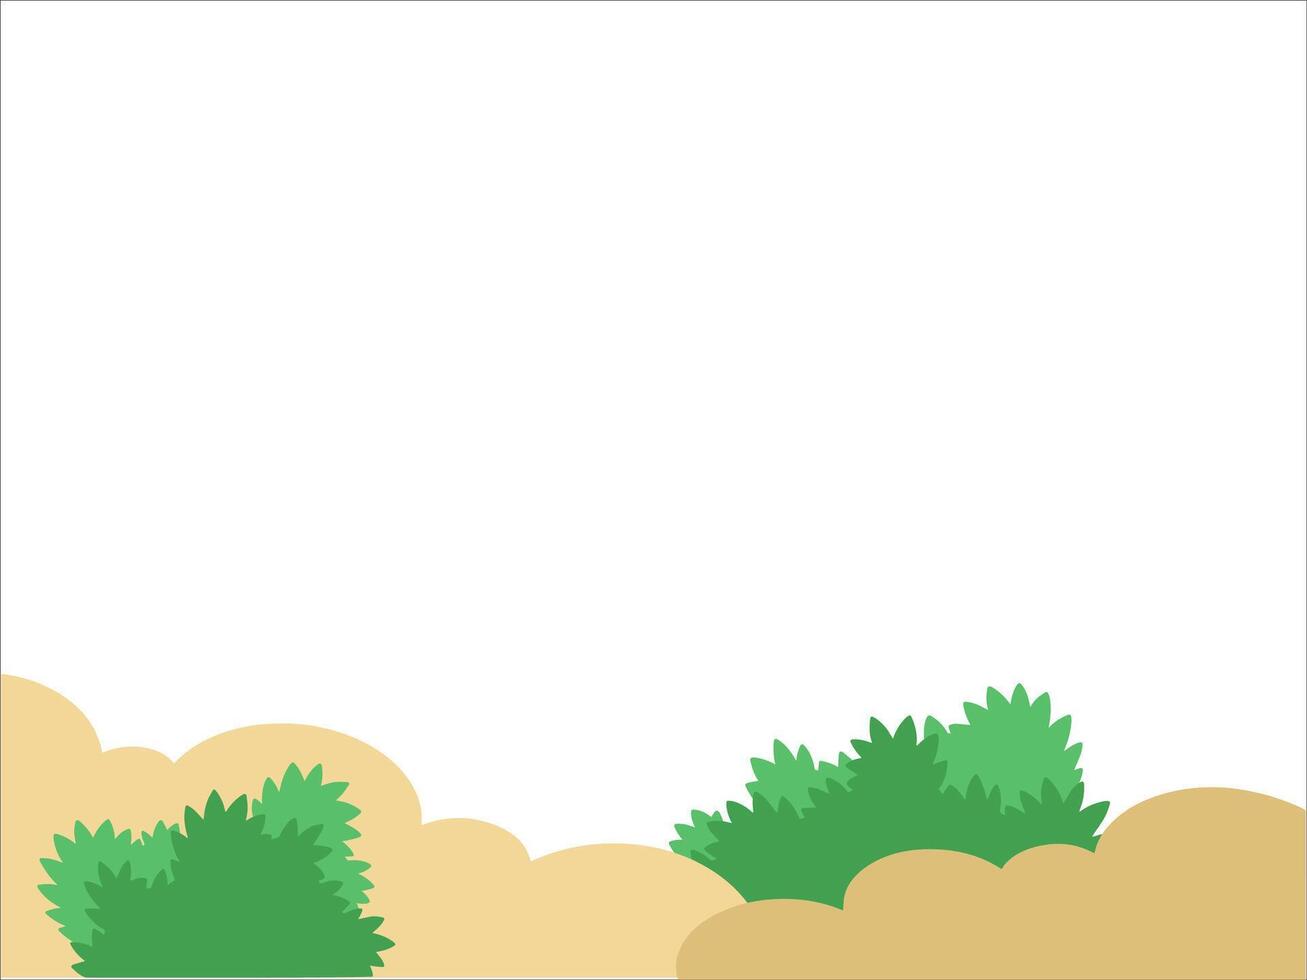 Grass Landscape Land Background Illustration vector